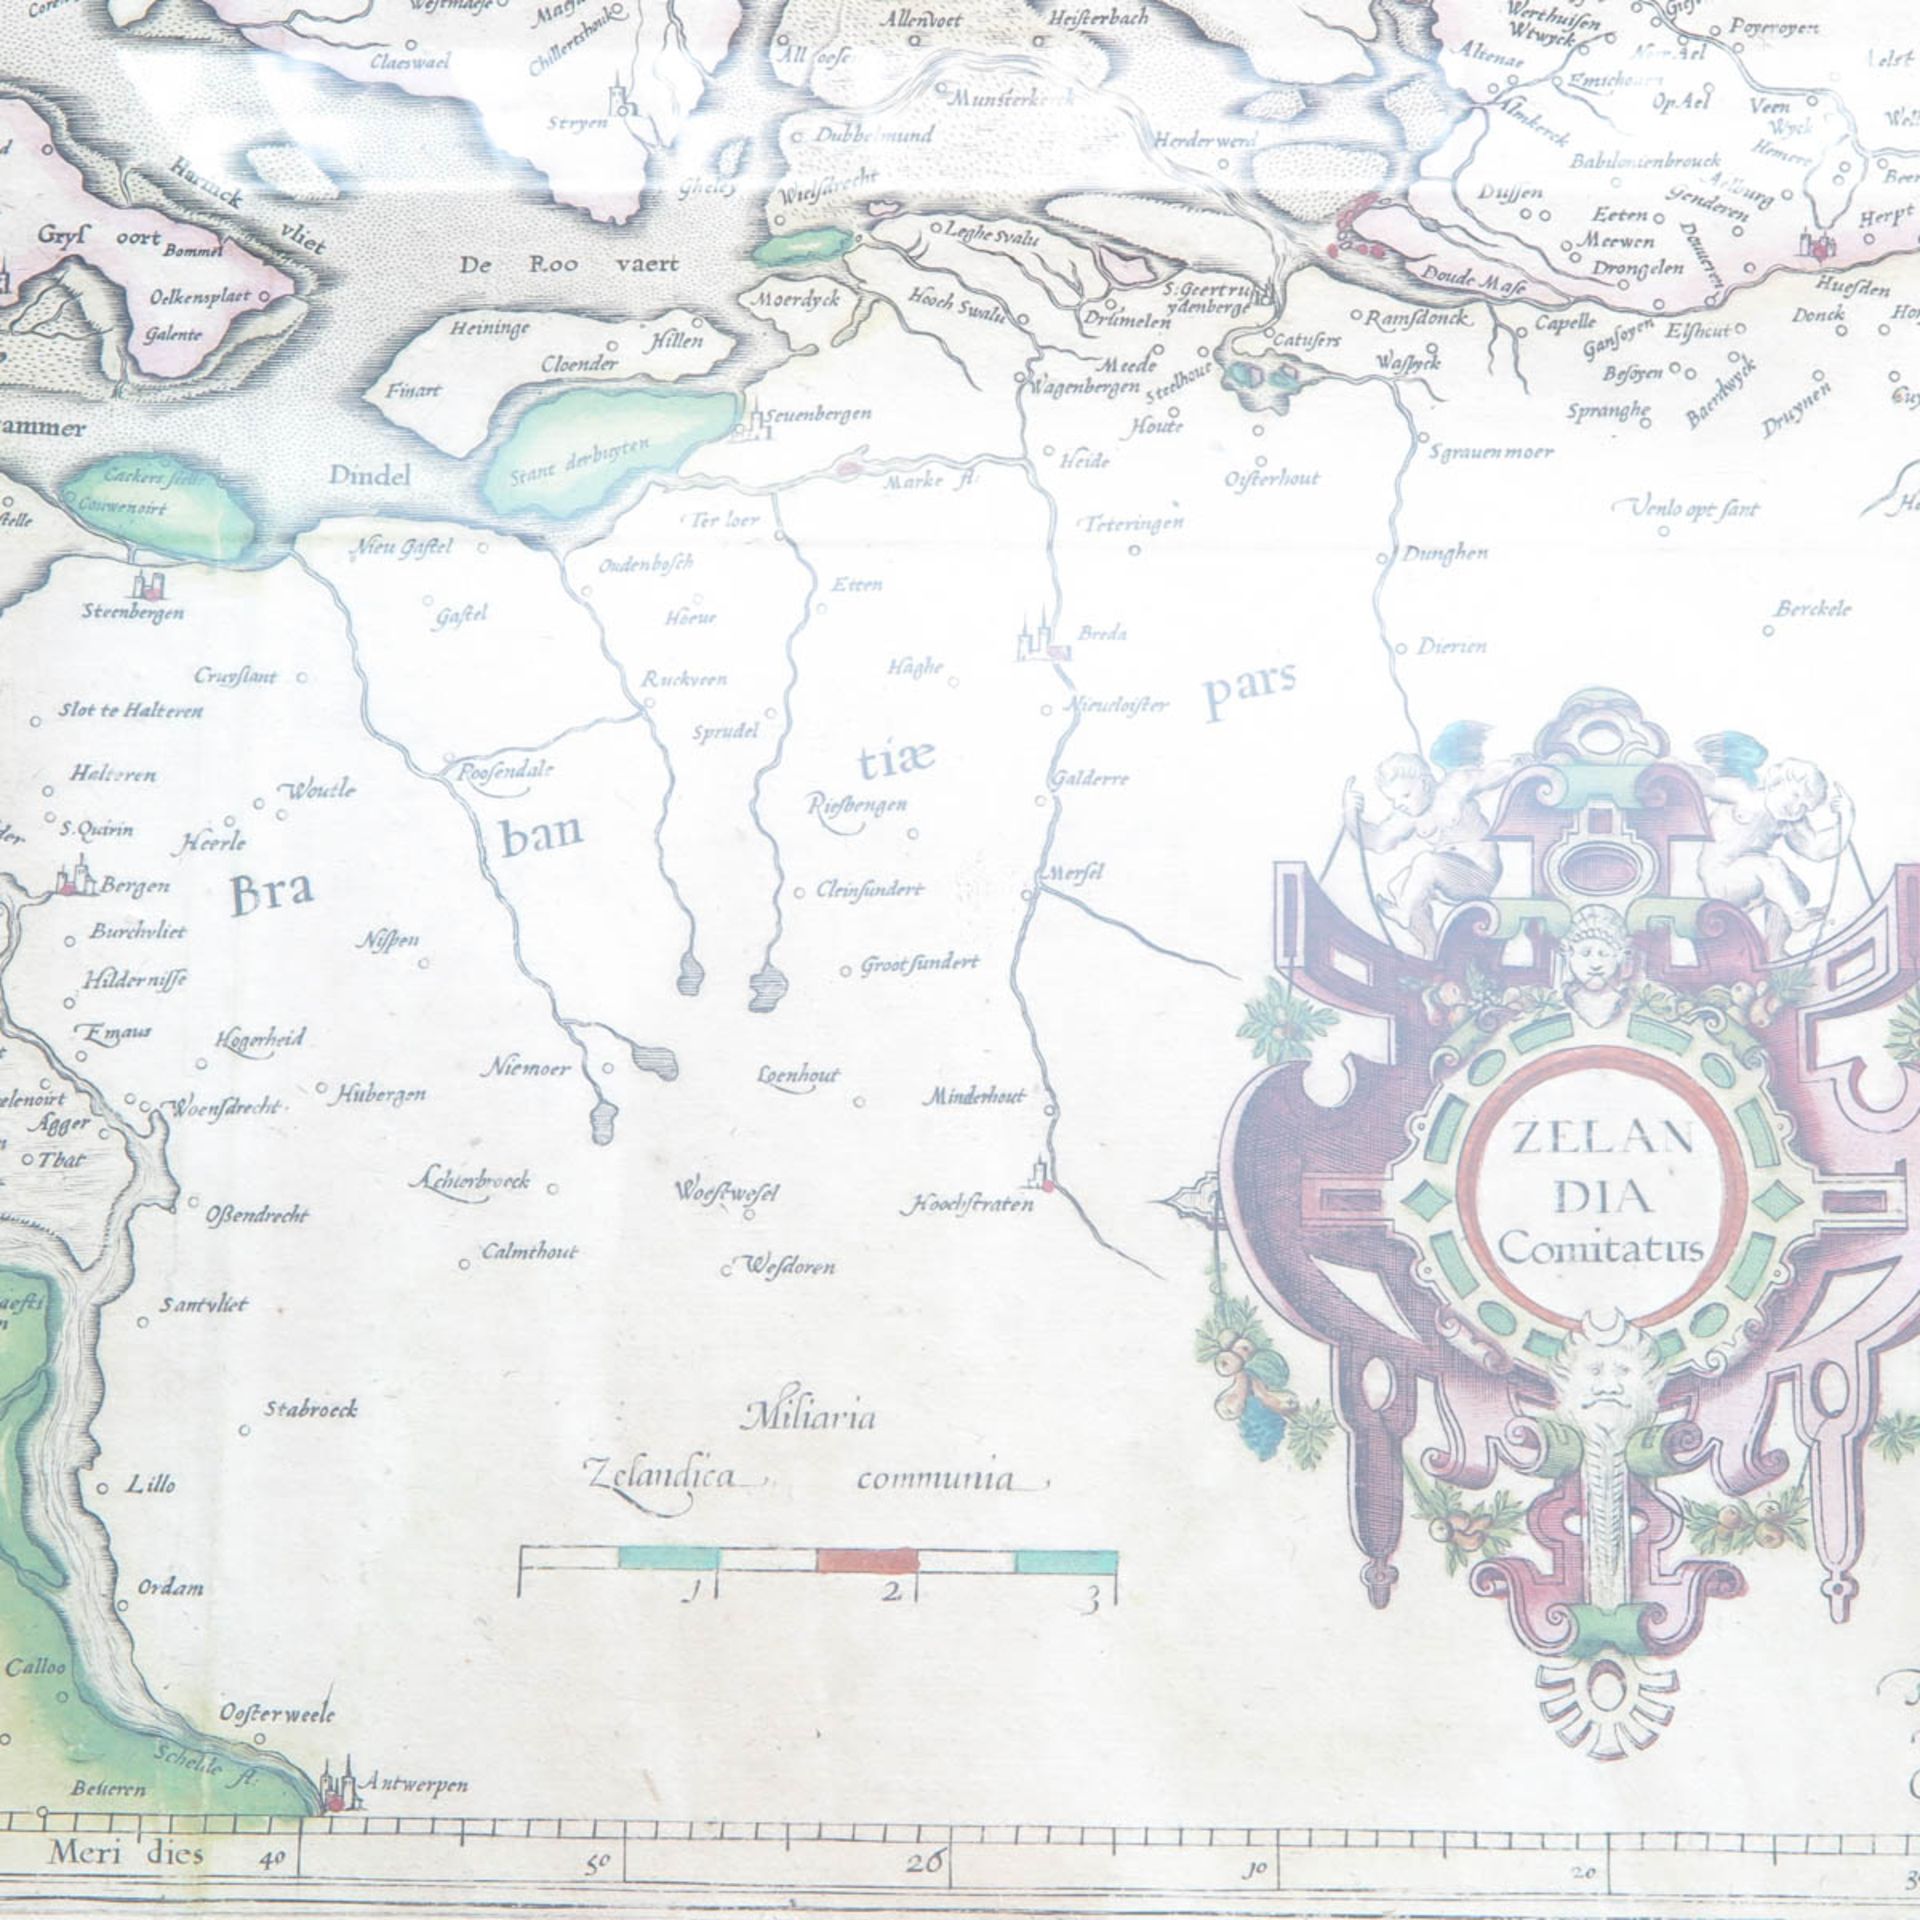 A Zeelandia Comitatus Map - Bild 6 aus 7